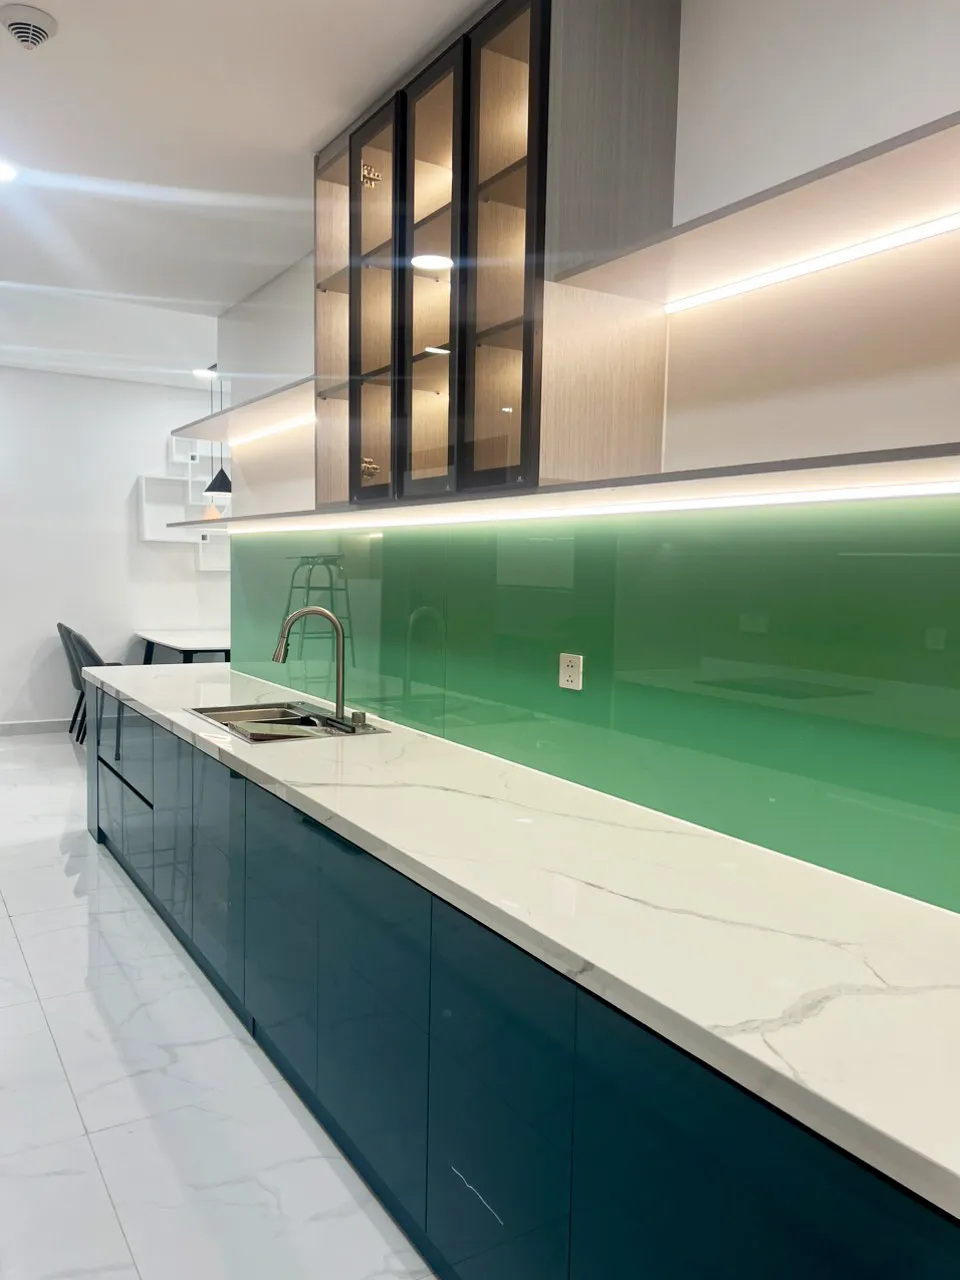 Hoàn thiện nội thất nhà bếp Căn hộ chung cư Celadon Tân Phú 95m2 mang phong cách Color Block